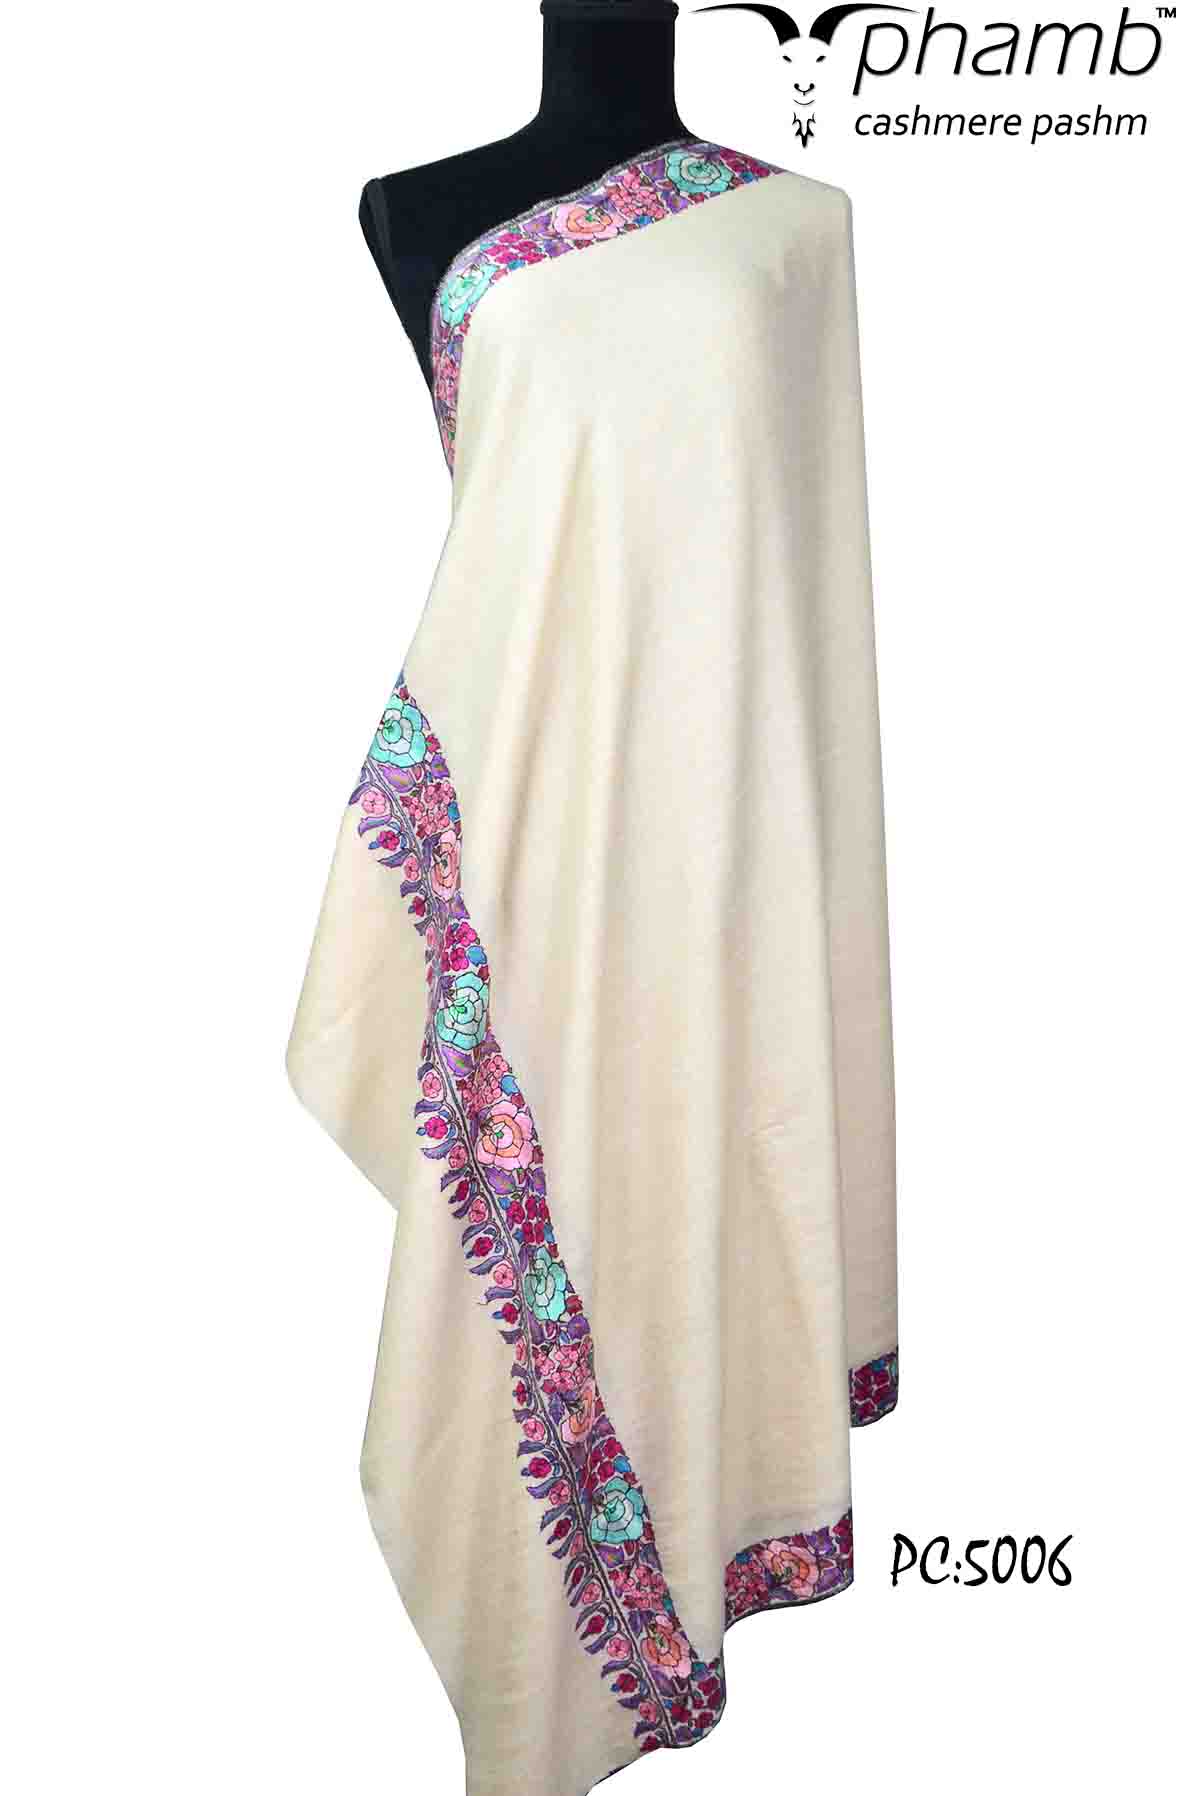 p.mashi shawl - 5006